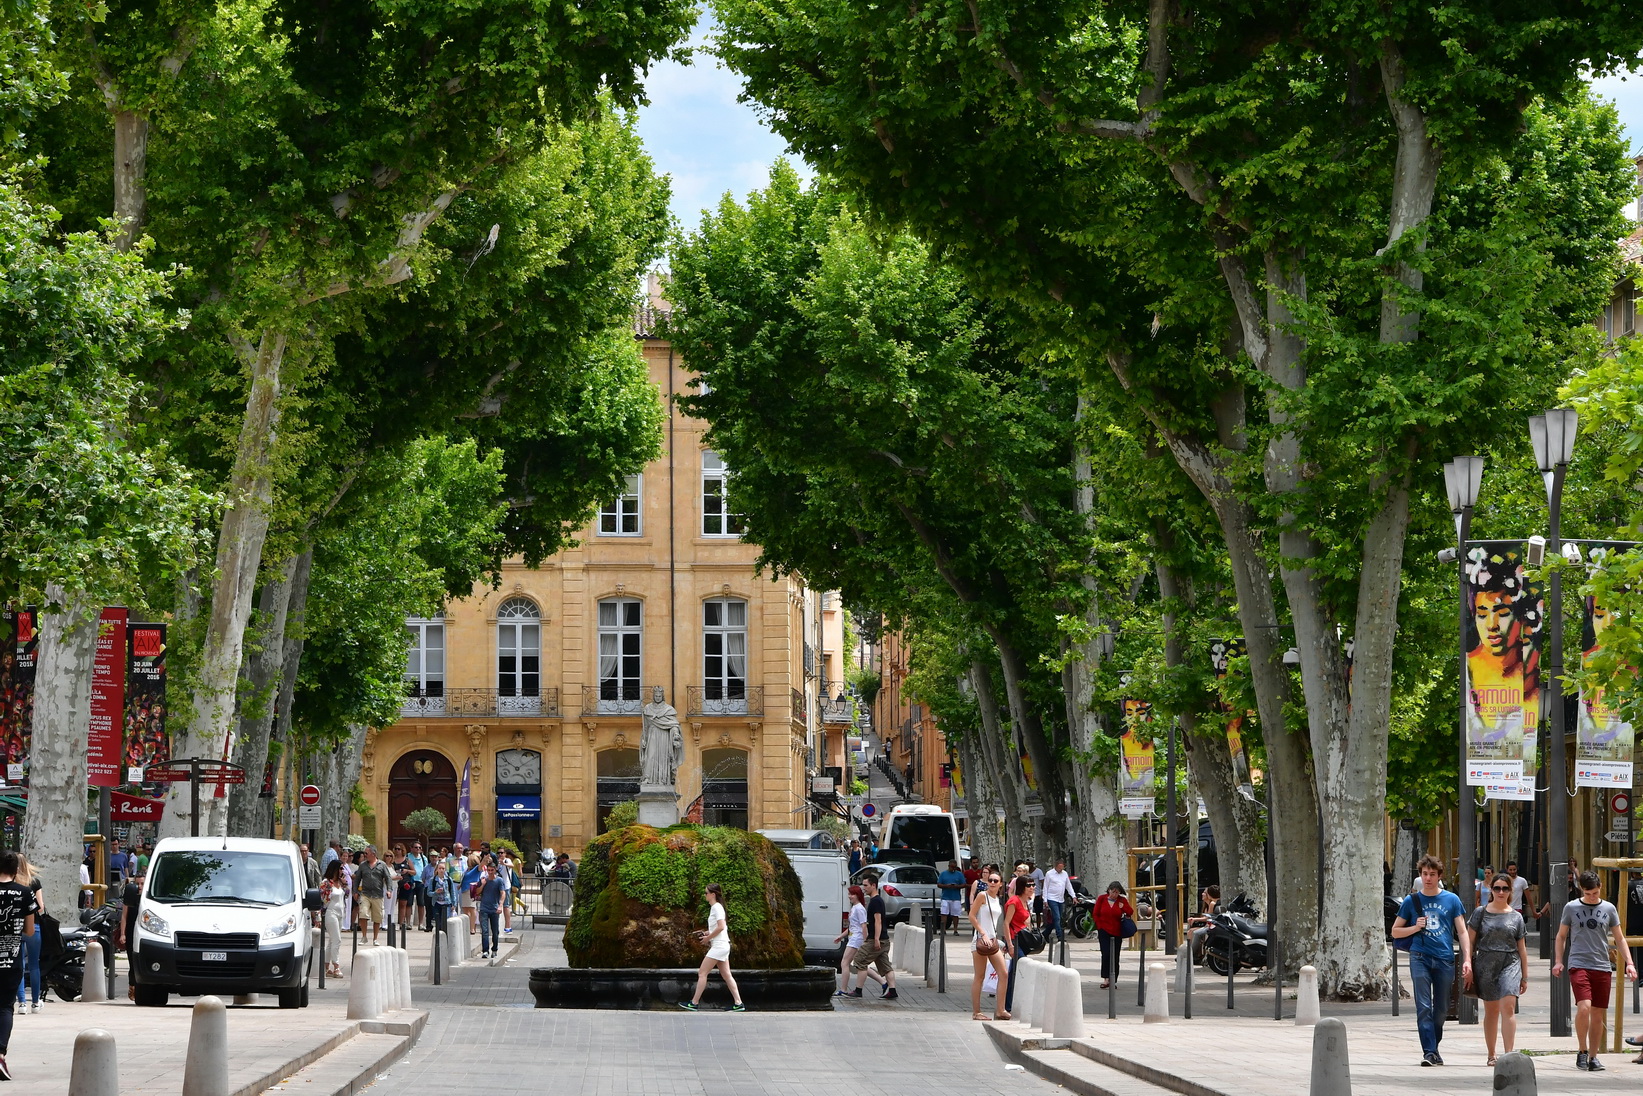 Bureaux Bouches-du-rhône - Location de Bureaux à Aix-en-Provence (13100)